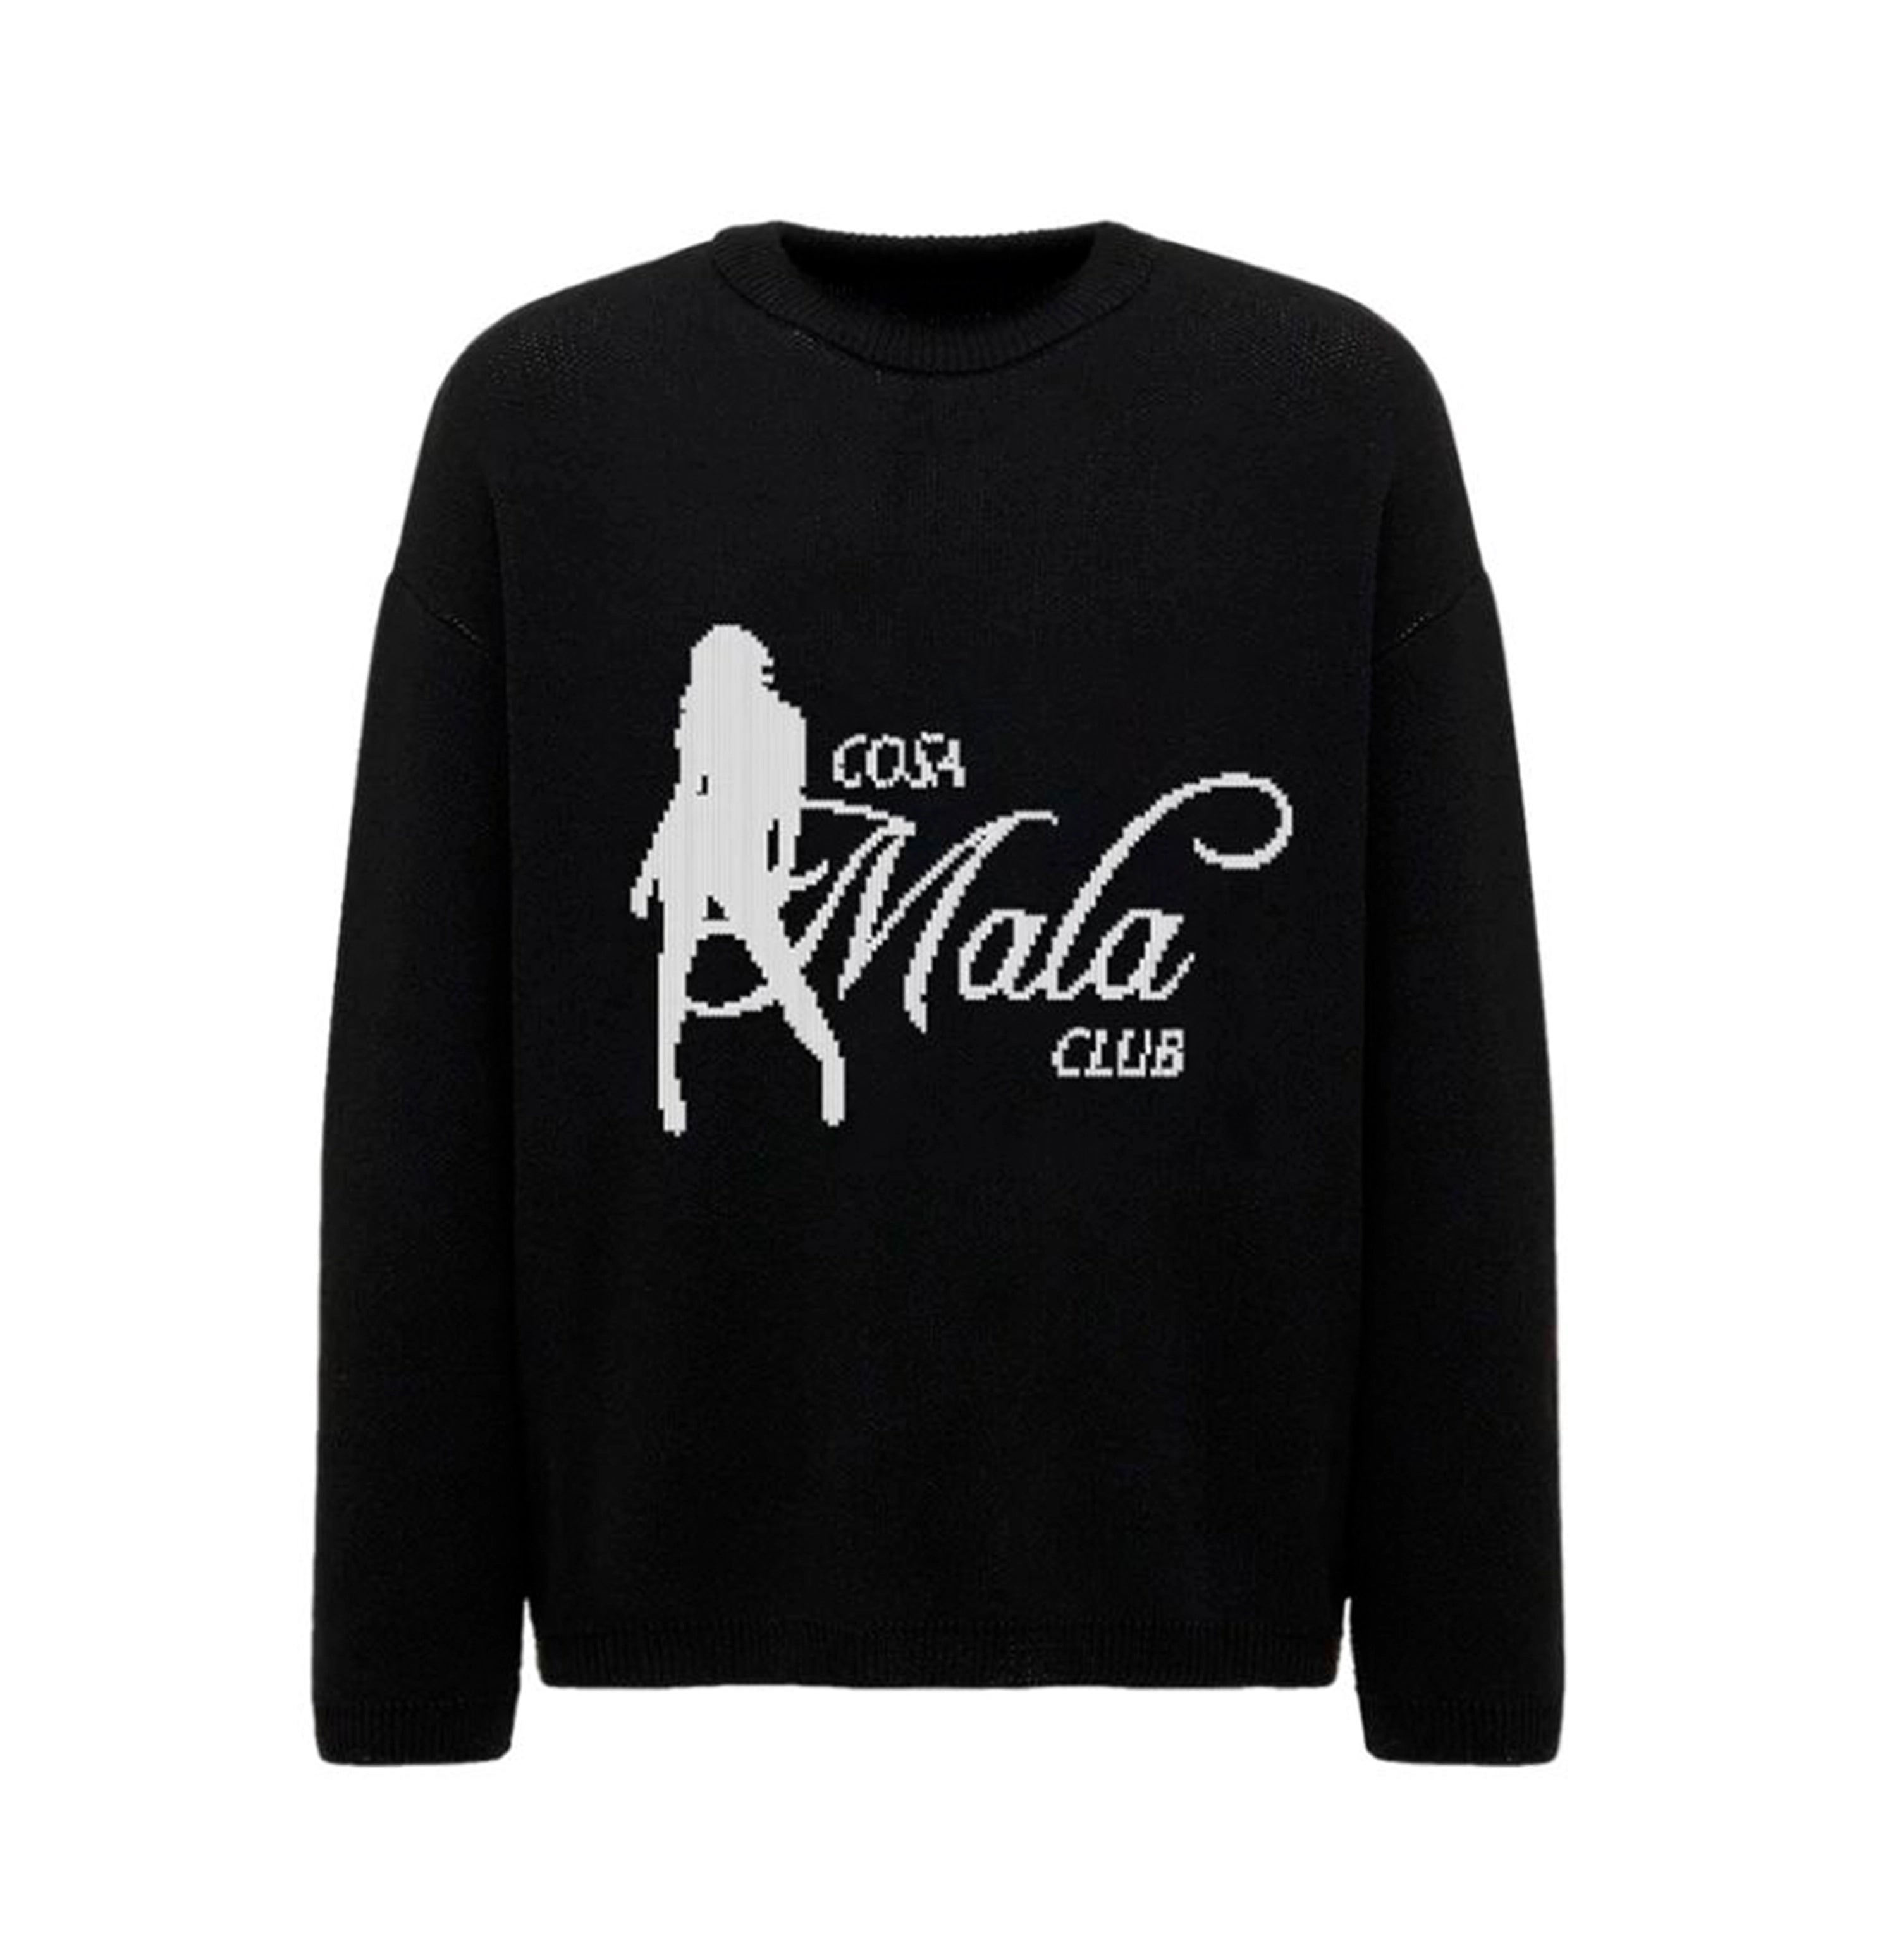 COSAMALA Club Knitted Sweater